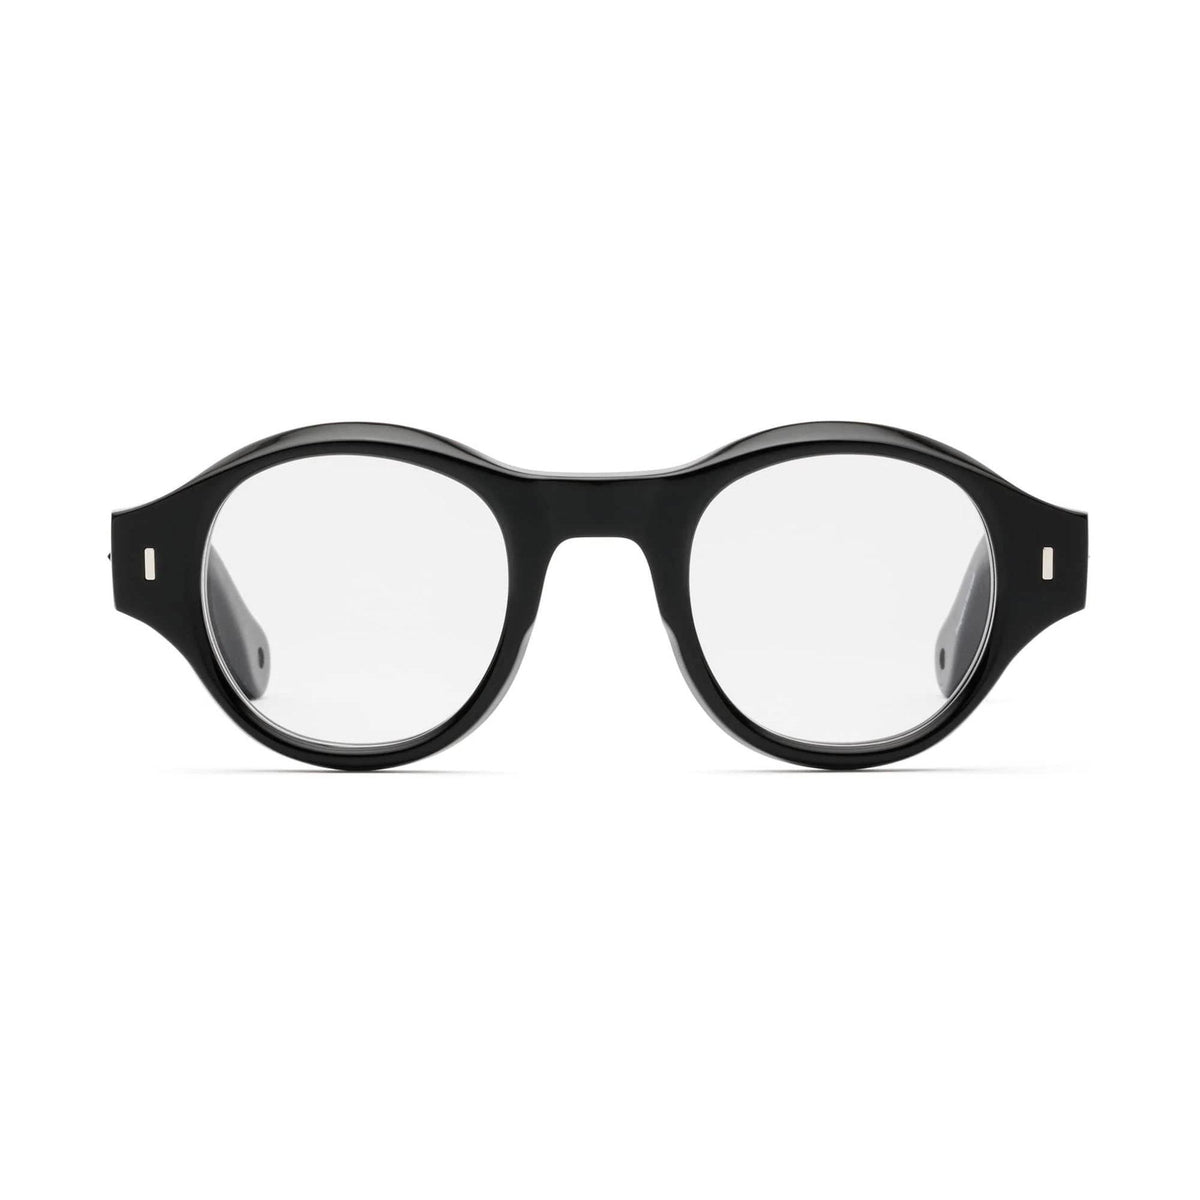 Wynton Glasses by Caddis